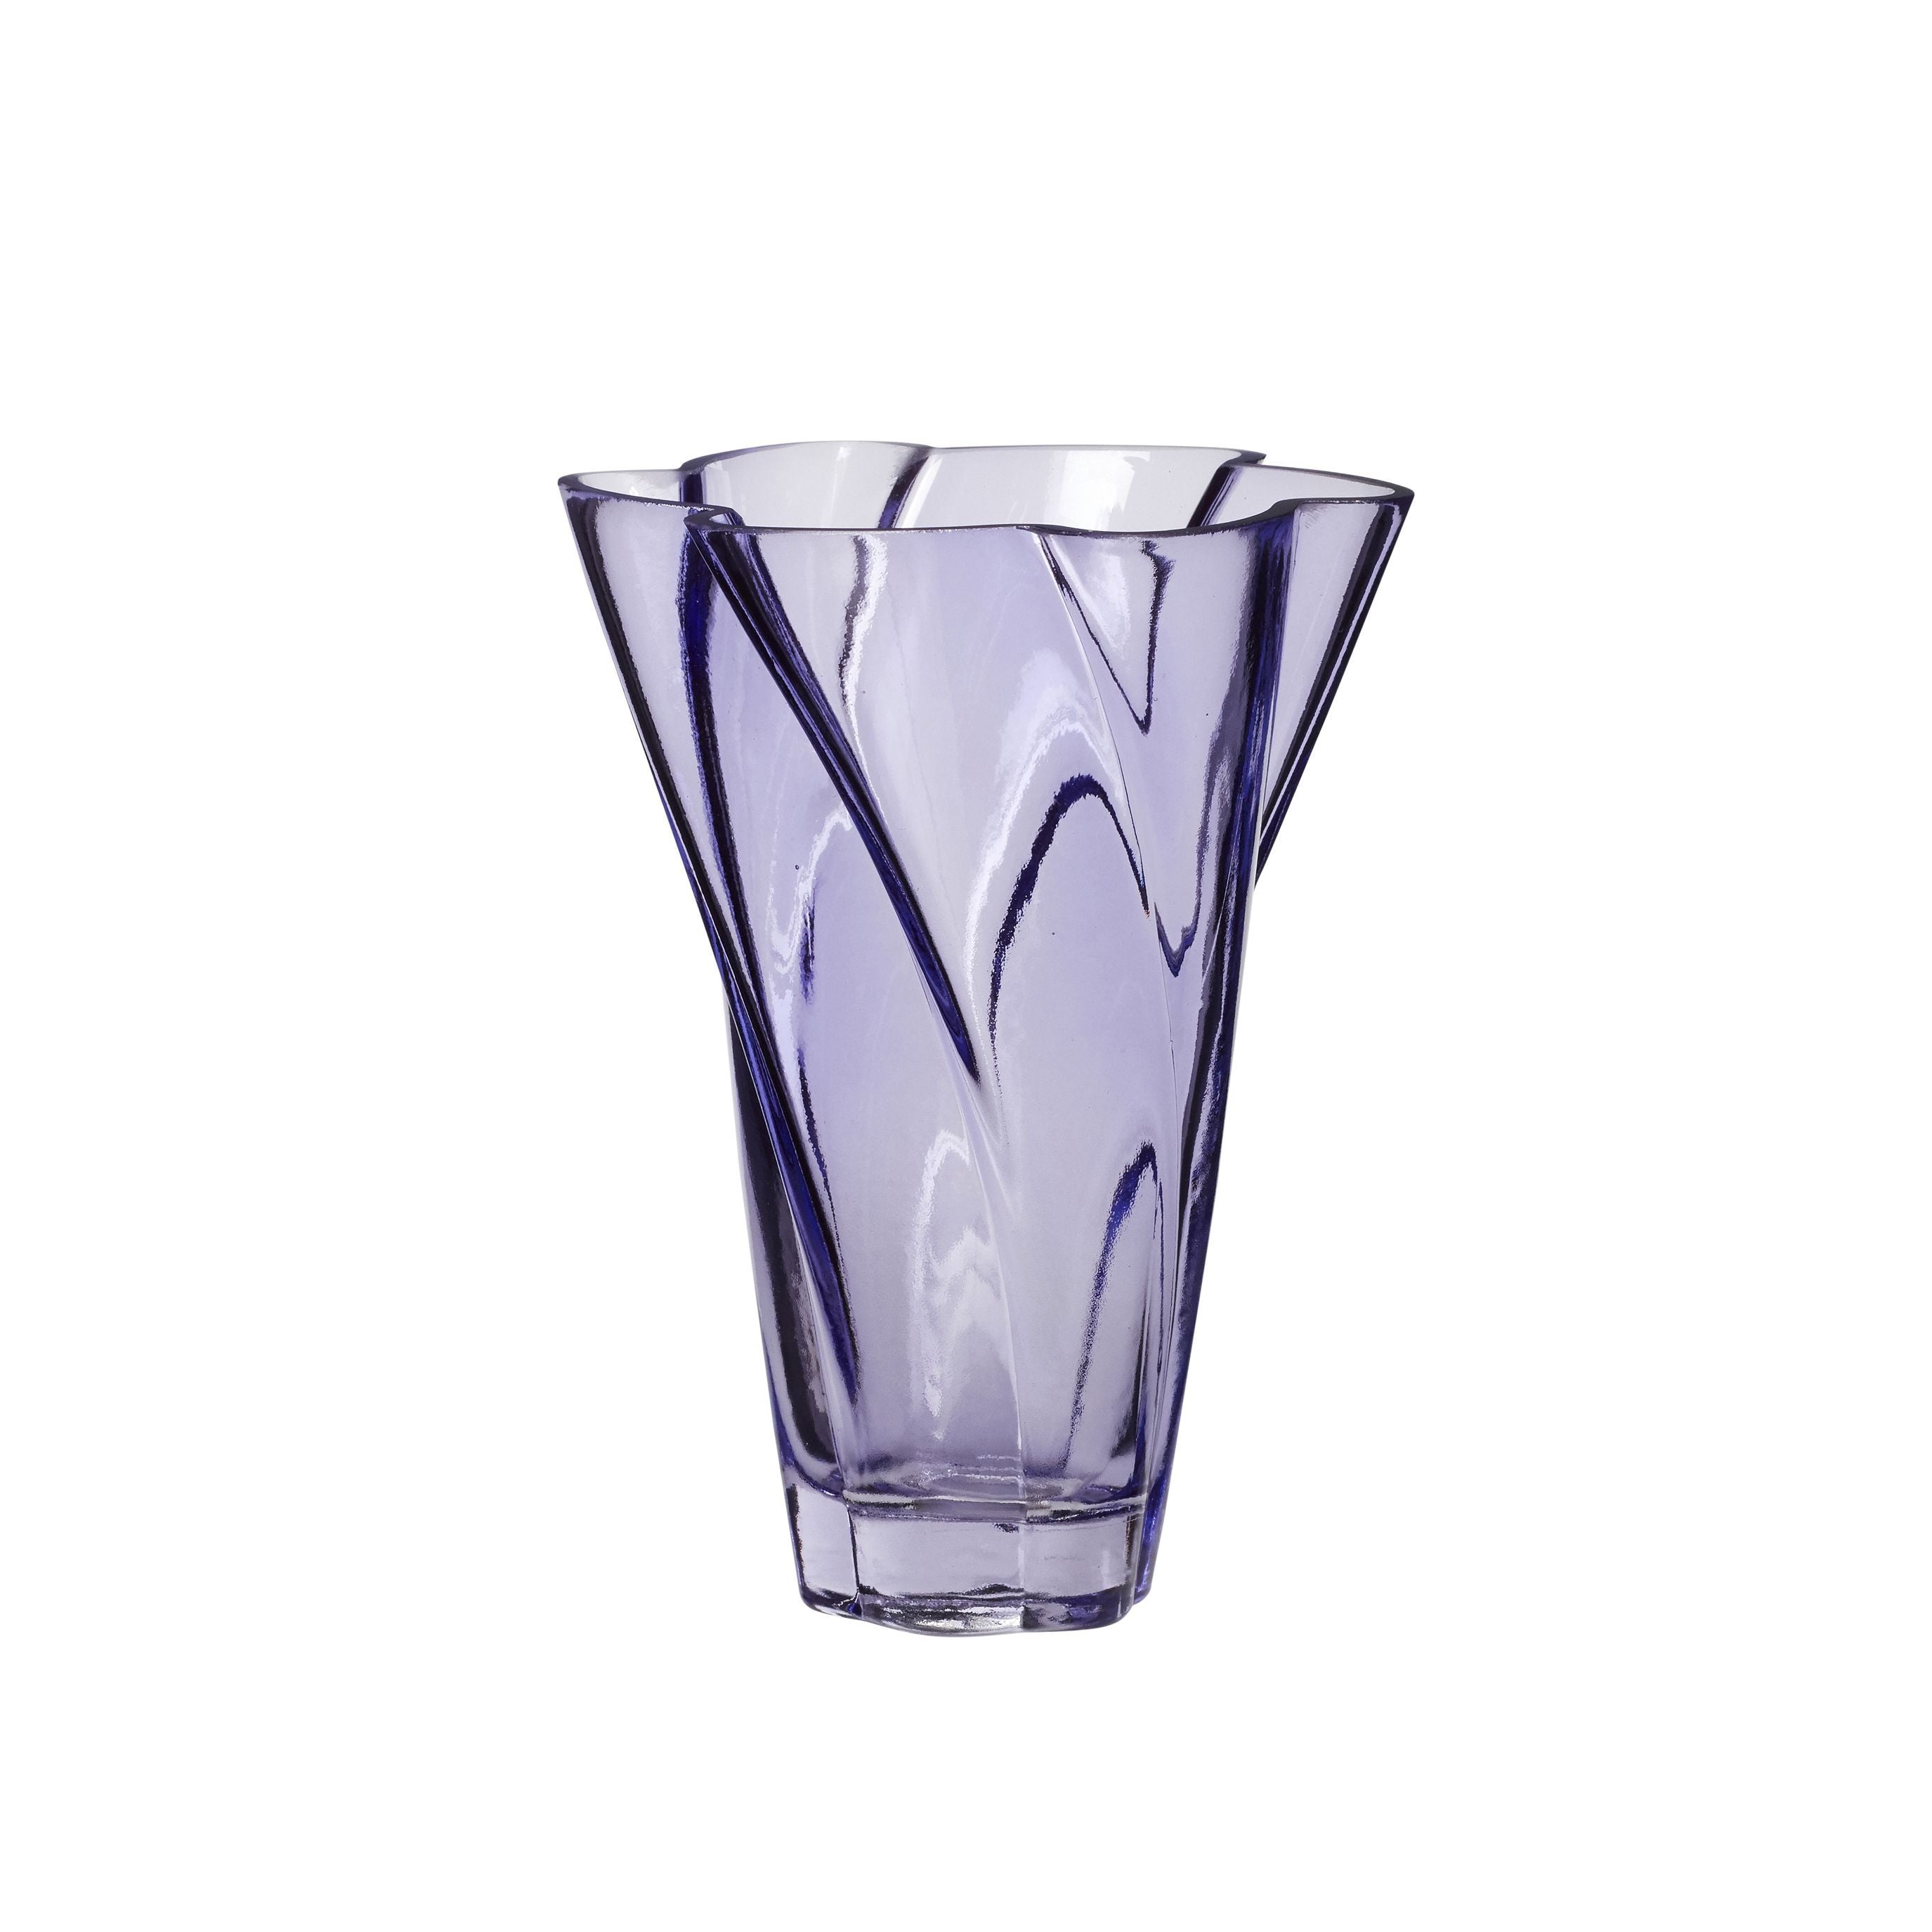 Hübsch花瓶玻璃紫色